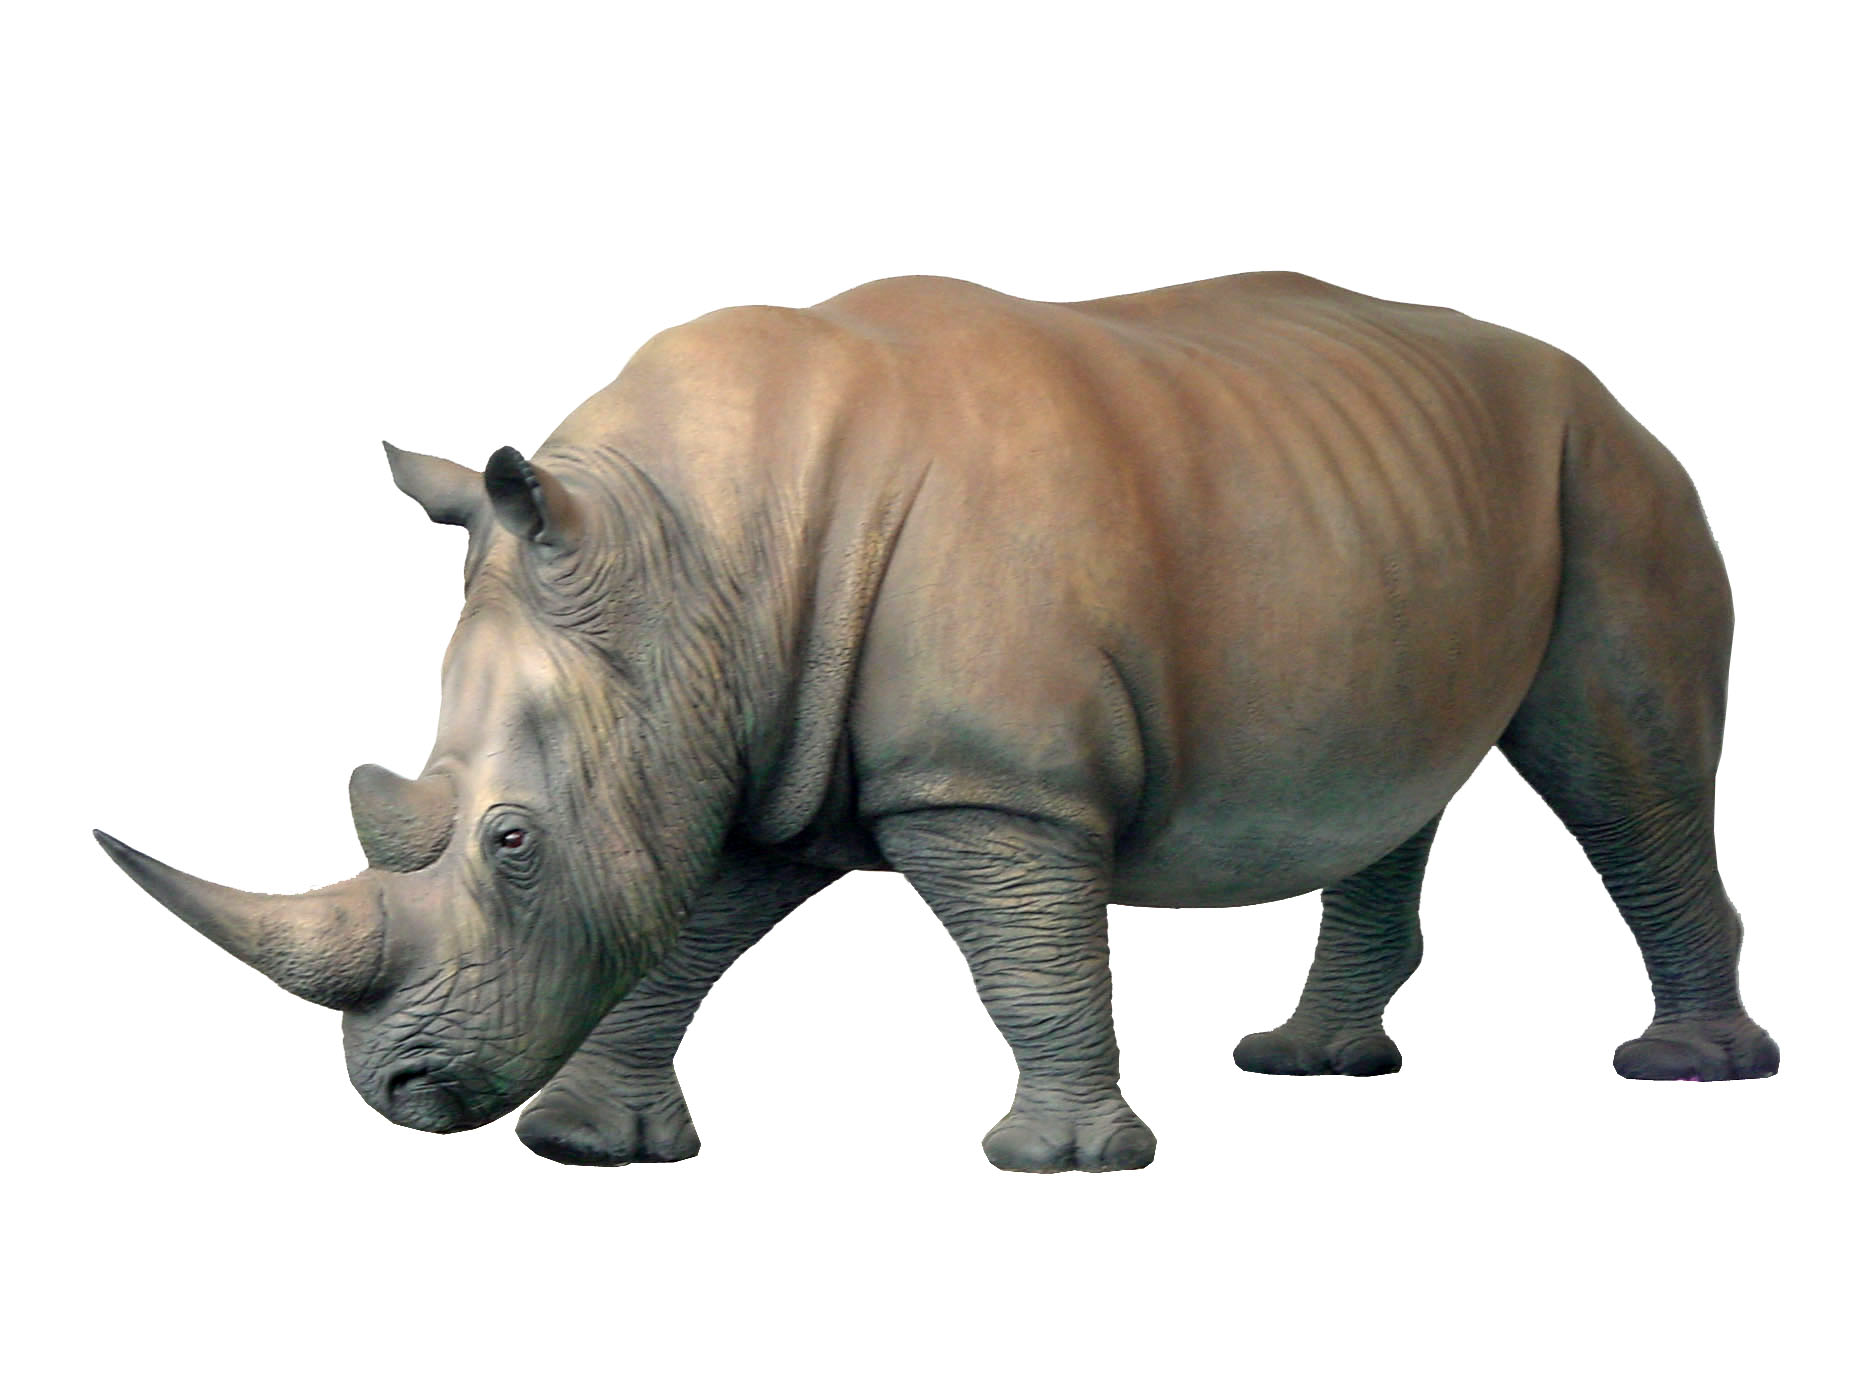 Rhino statue photo